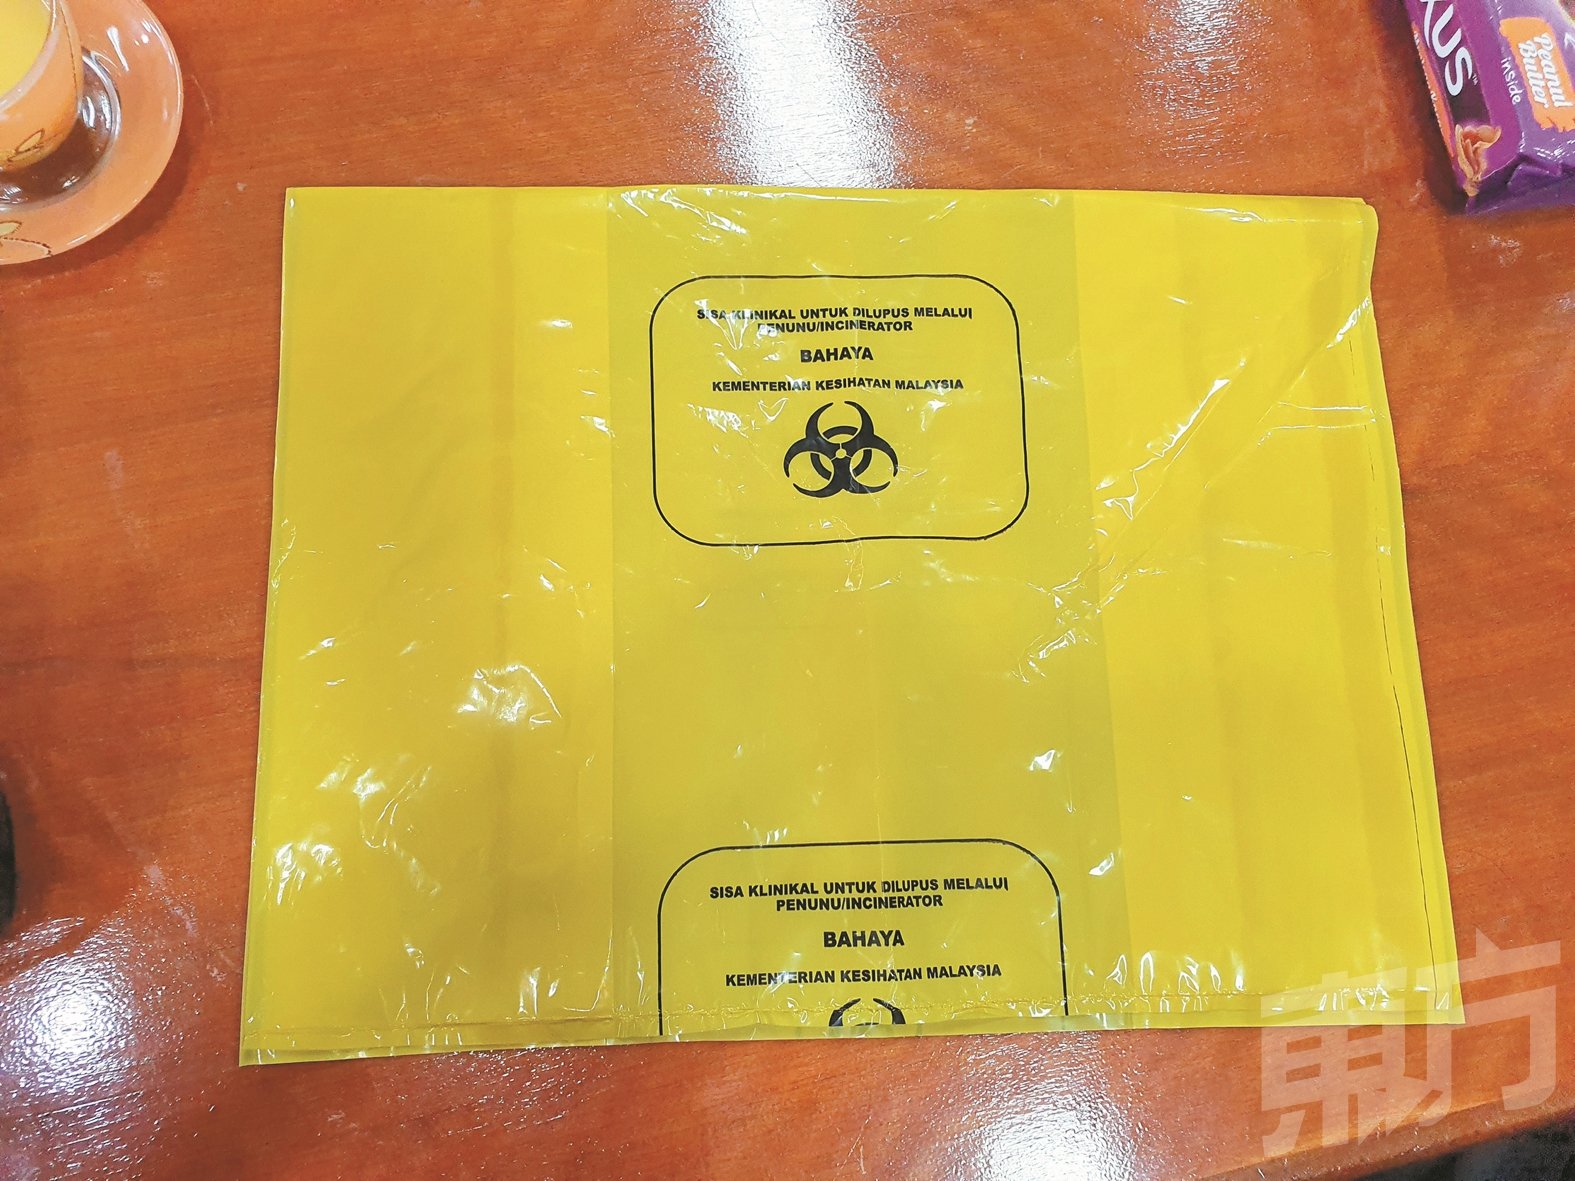 未使用过及逾期的药物回收时需装在特定的黄色纸袋，再送往高温焚化销毁。